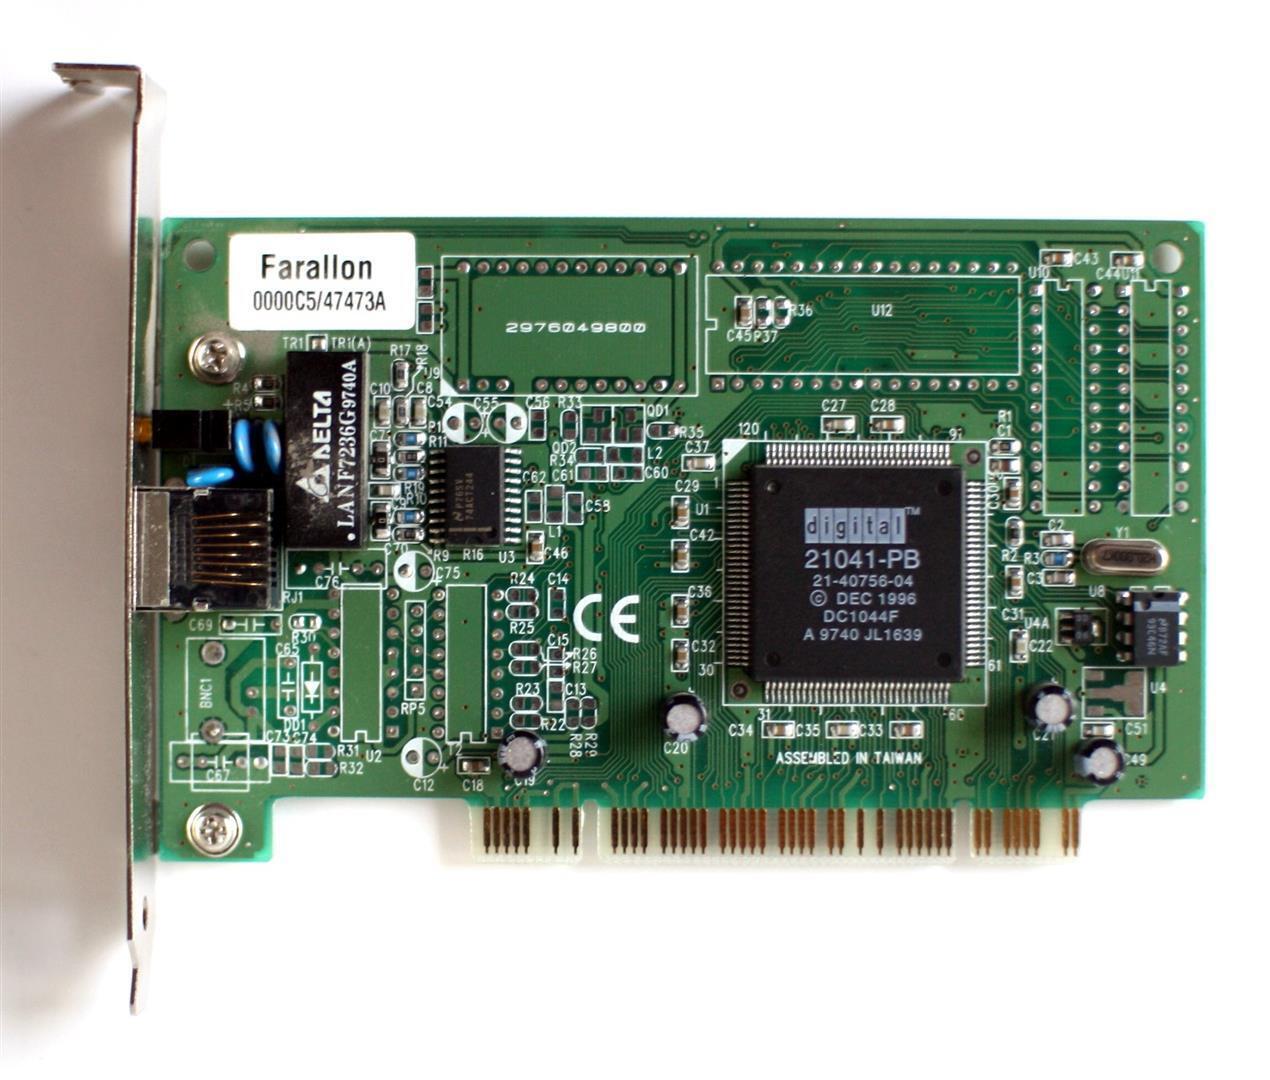 2976049800 FARALLON ETHERNET CARD PCI